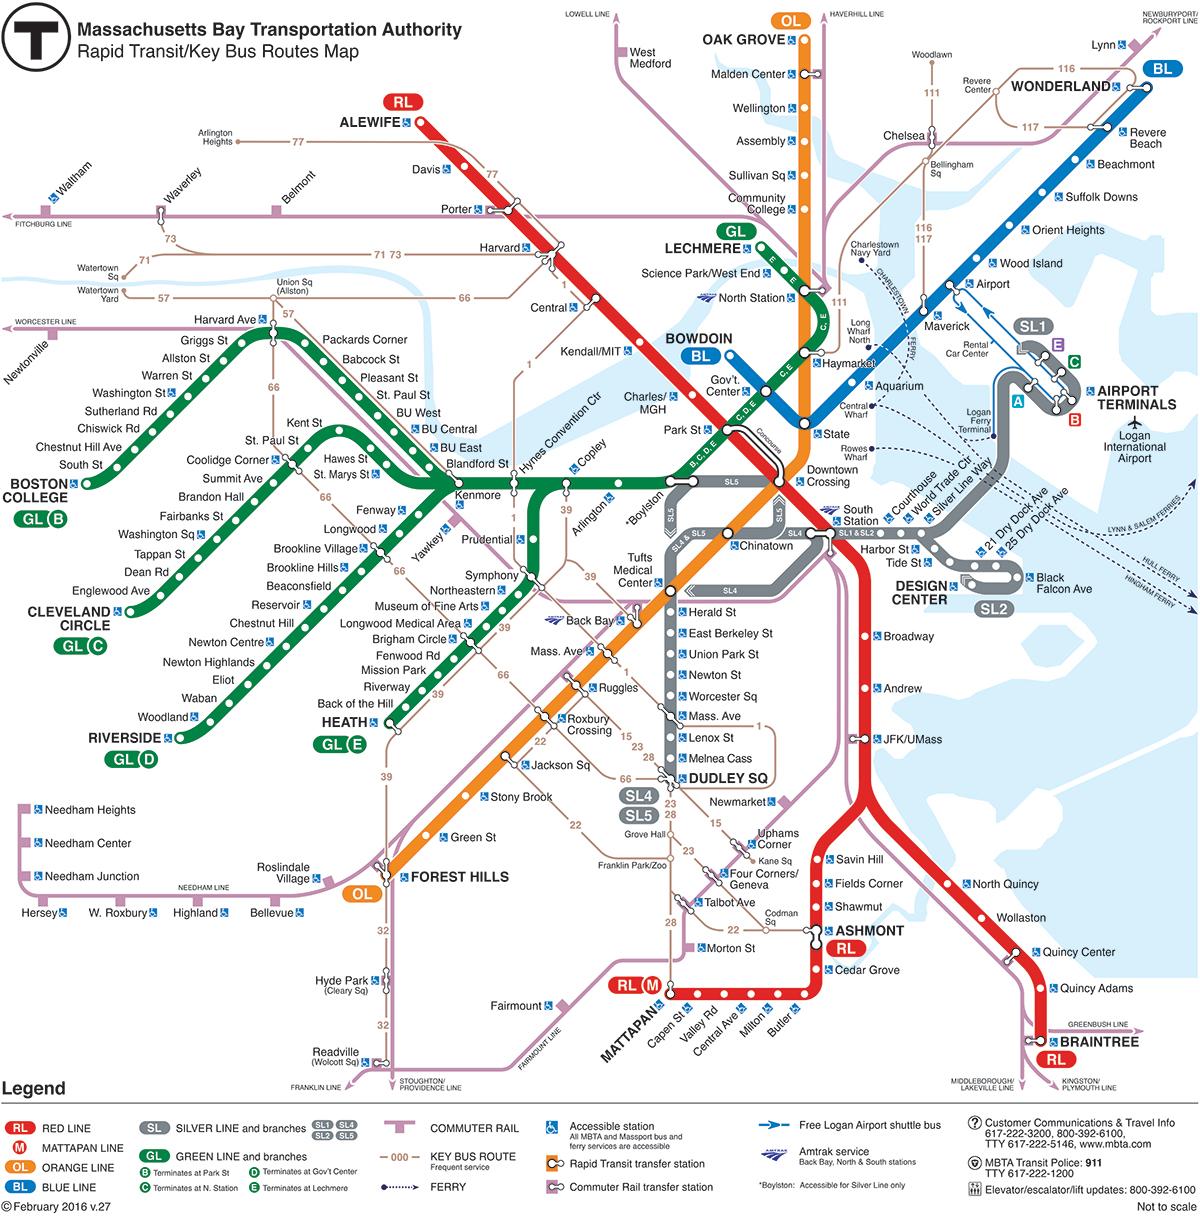 red line tour boston